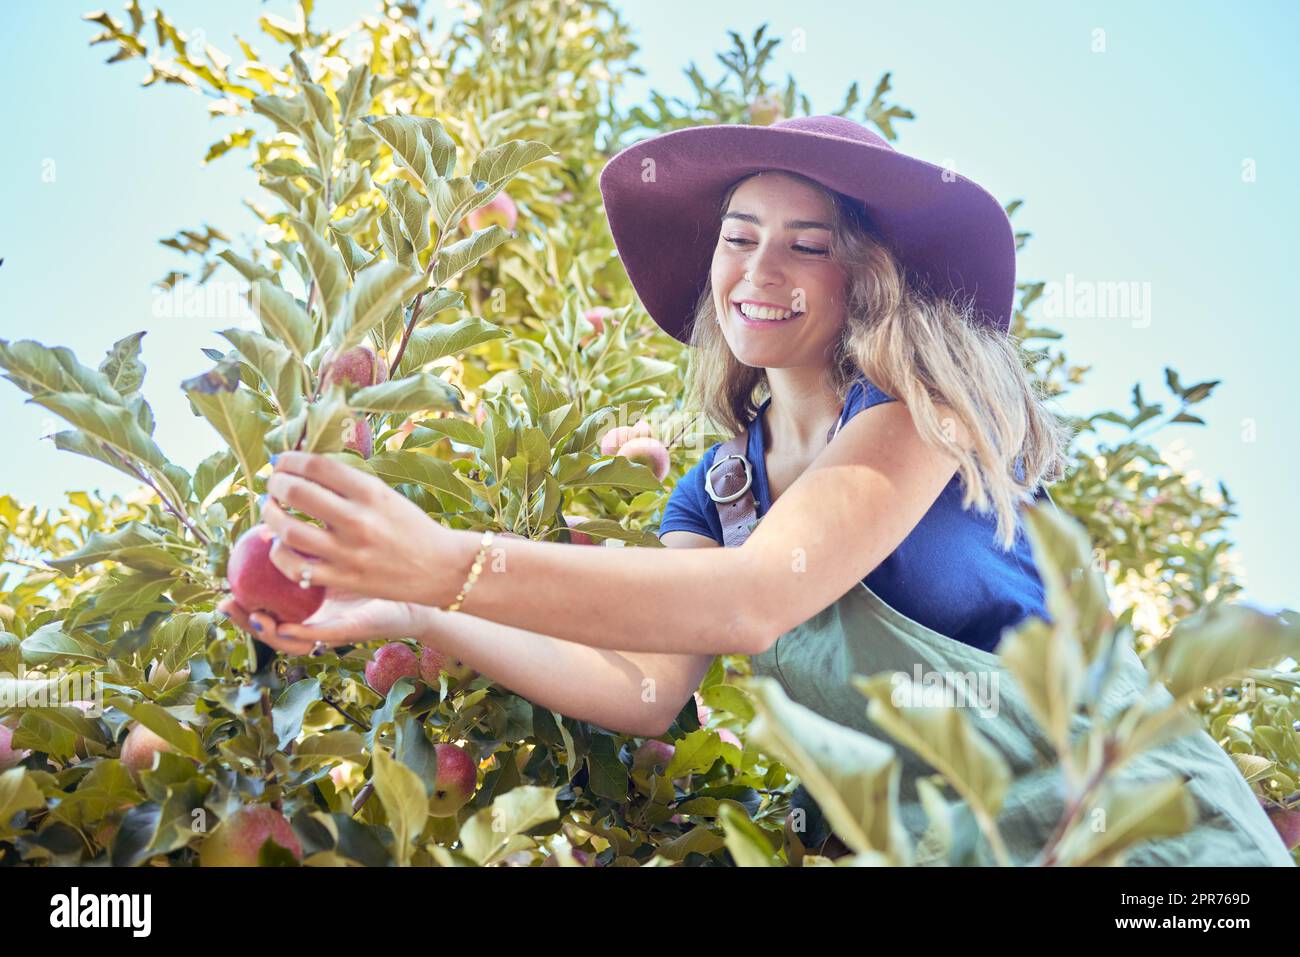 Mujer joven recogiendo una manzana de un árbol. Mujer feliz con un sombrero  de paja y agarrando frutas en un huerto durante la temporada de cosecha.  Manzanas rojas frescas que crecen en